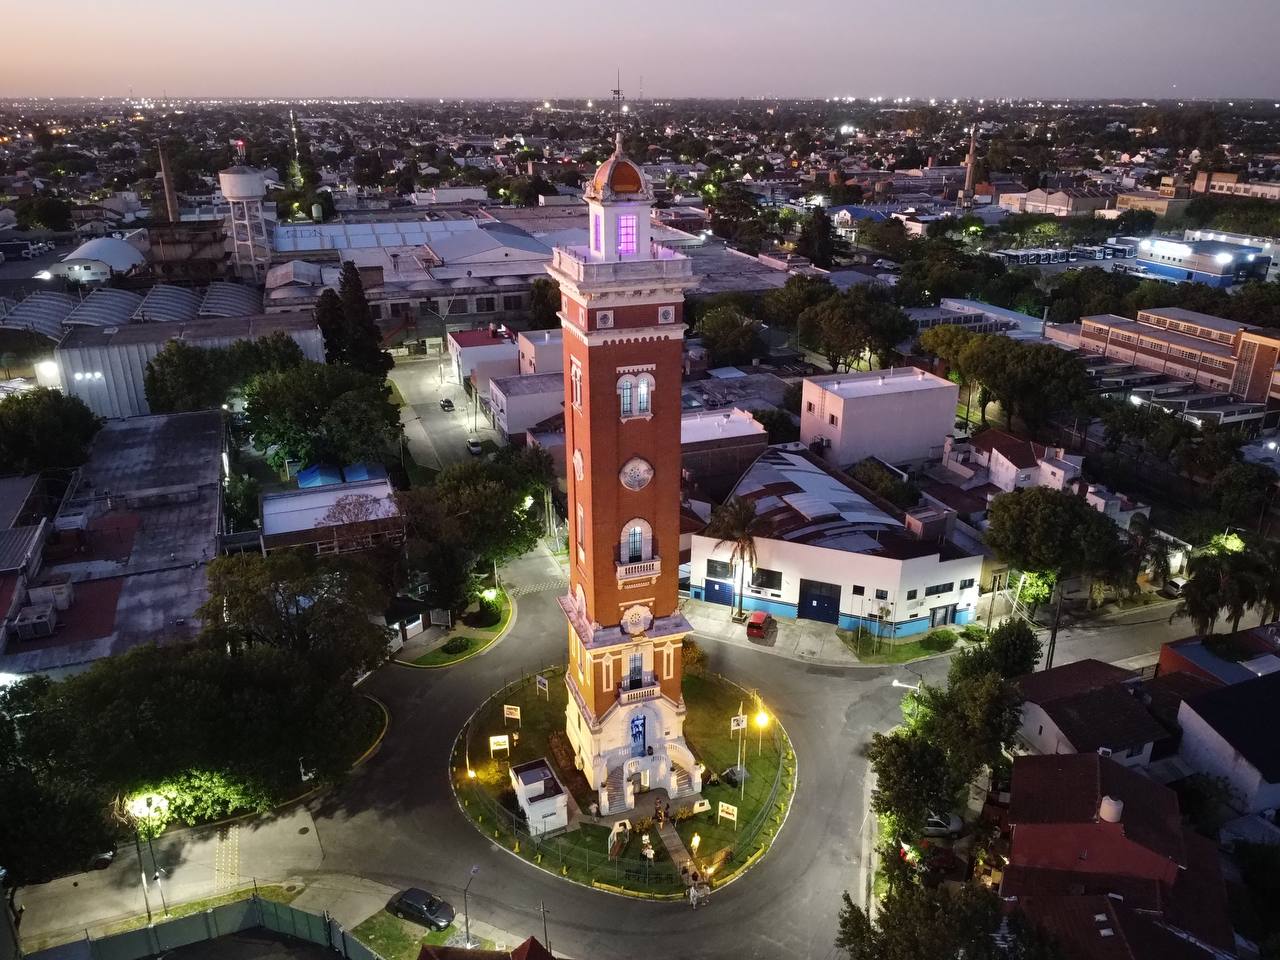 Vista aérea de la Torre Ader en Vicente López al atardecer, mostrando la torre iluminada y rodeada de edificios y calles.